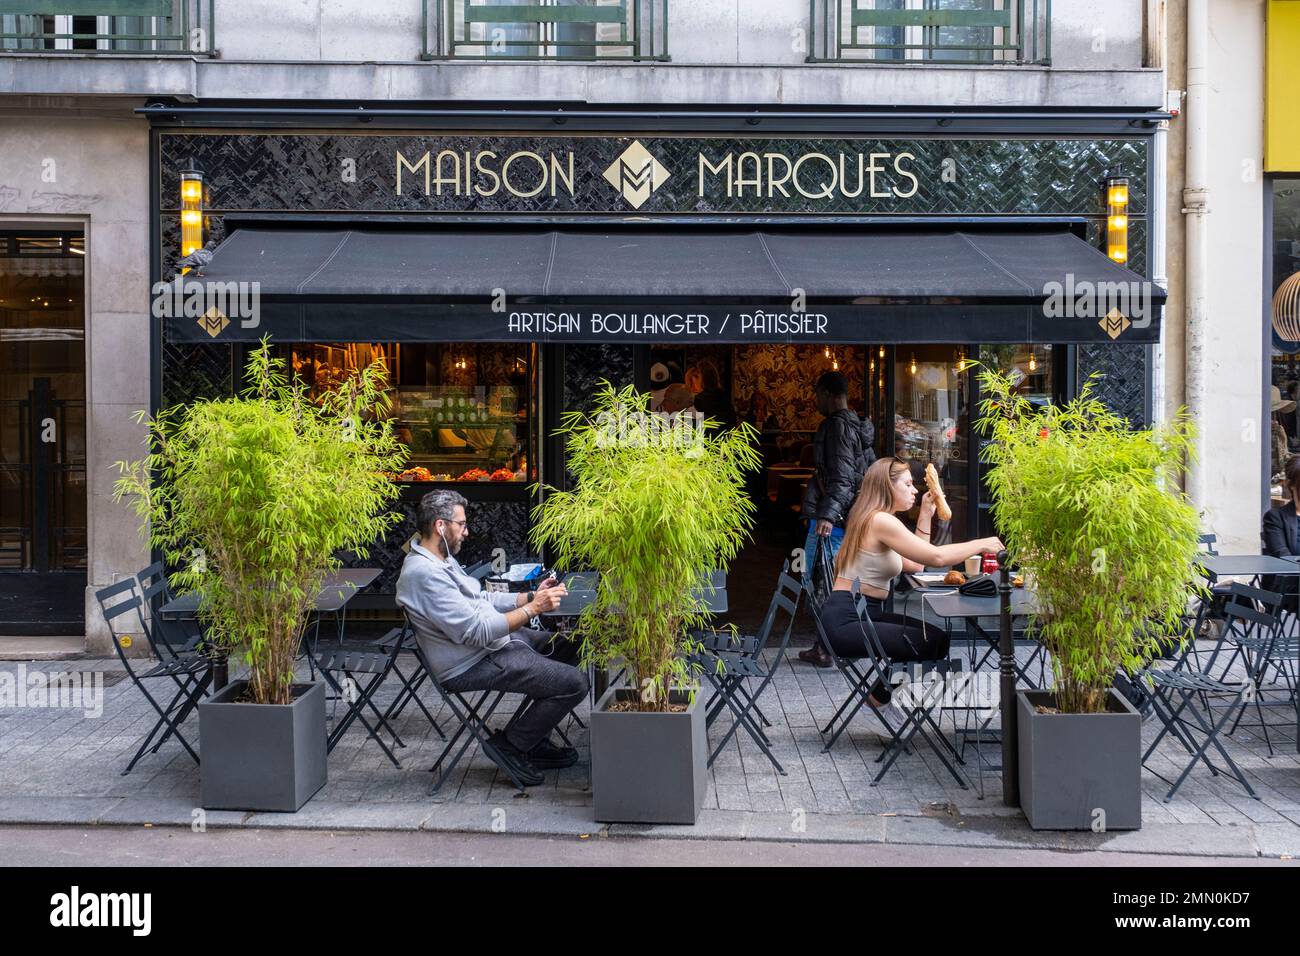 Frankreich, Paris, Maison Marques Bakery, Terrasse et devanture Stockfoto